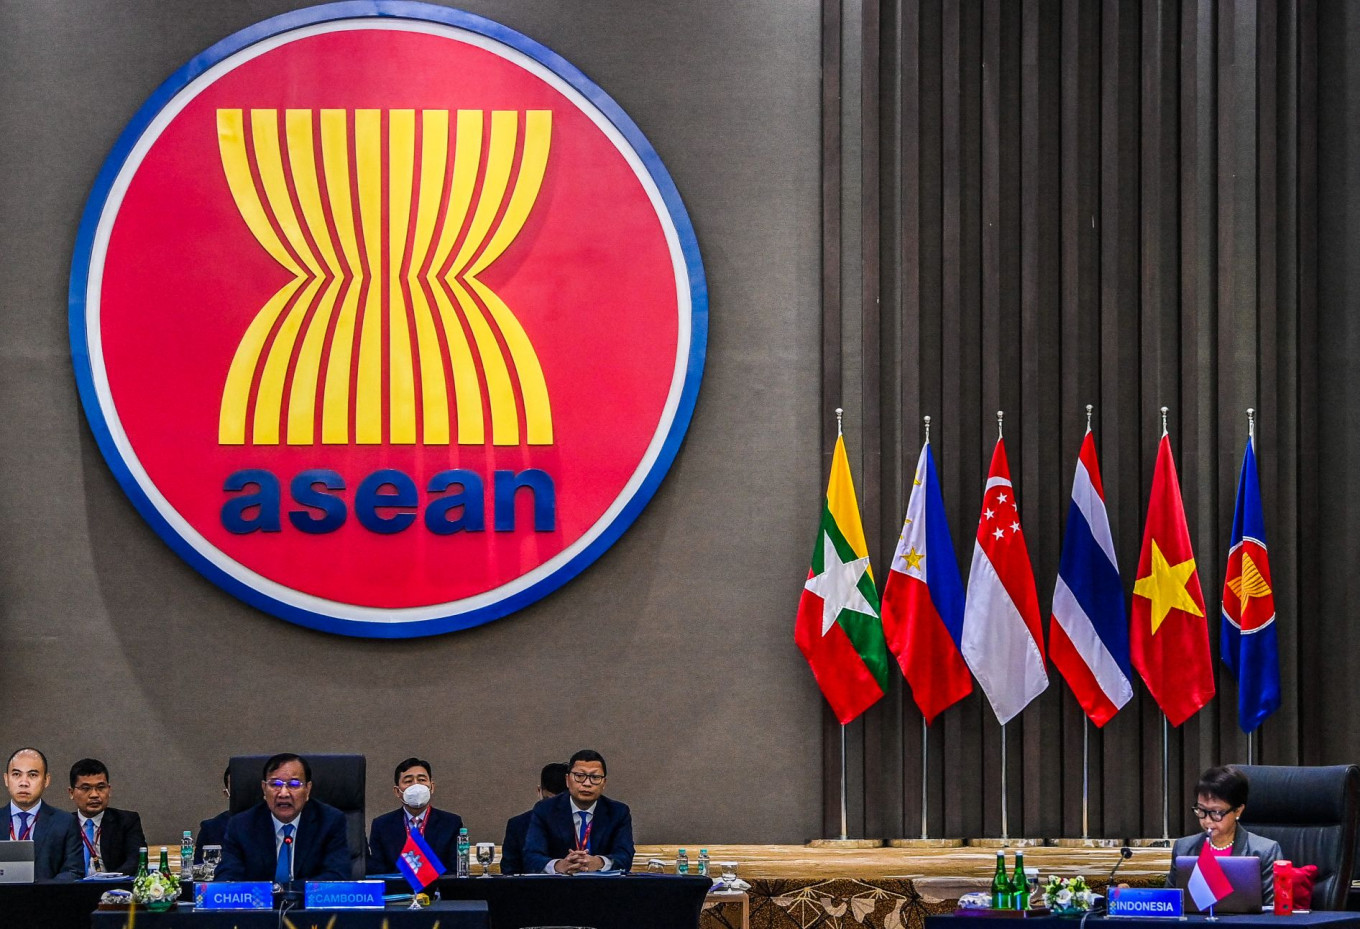 Presidensi ASEAN Indonesia berfokus pada pertumbuhan ekonomi: Menteri – Asia dan Pasifik